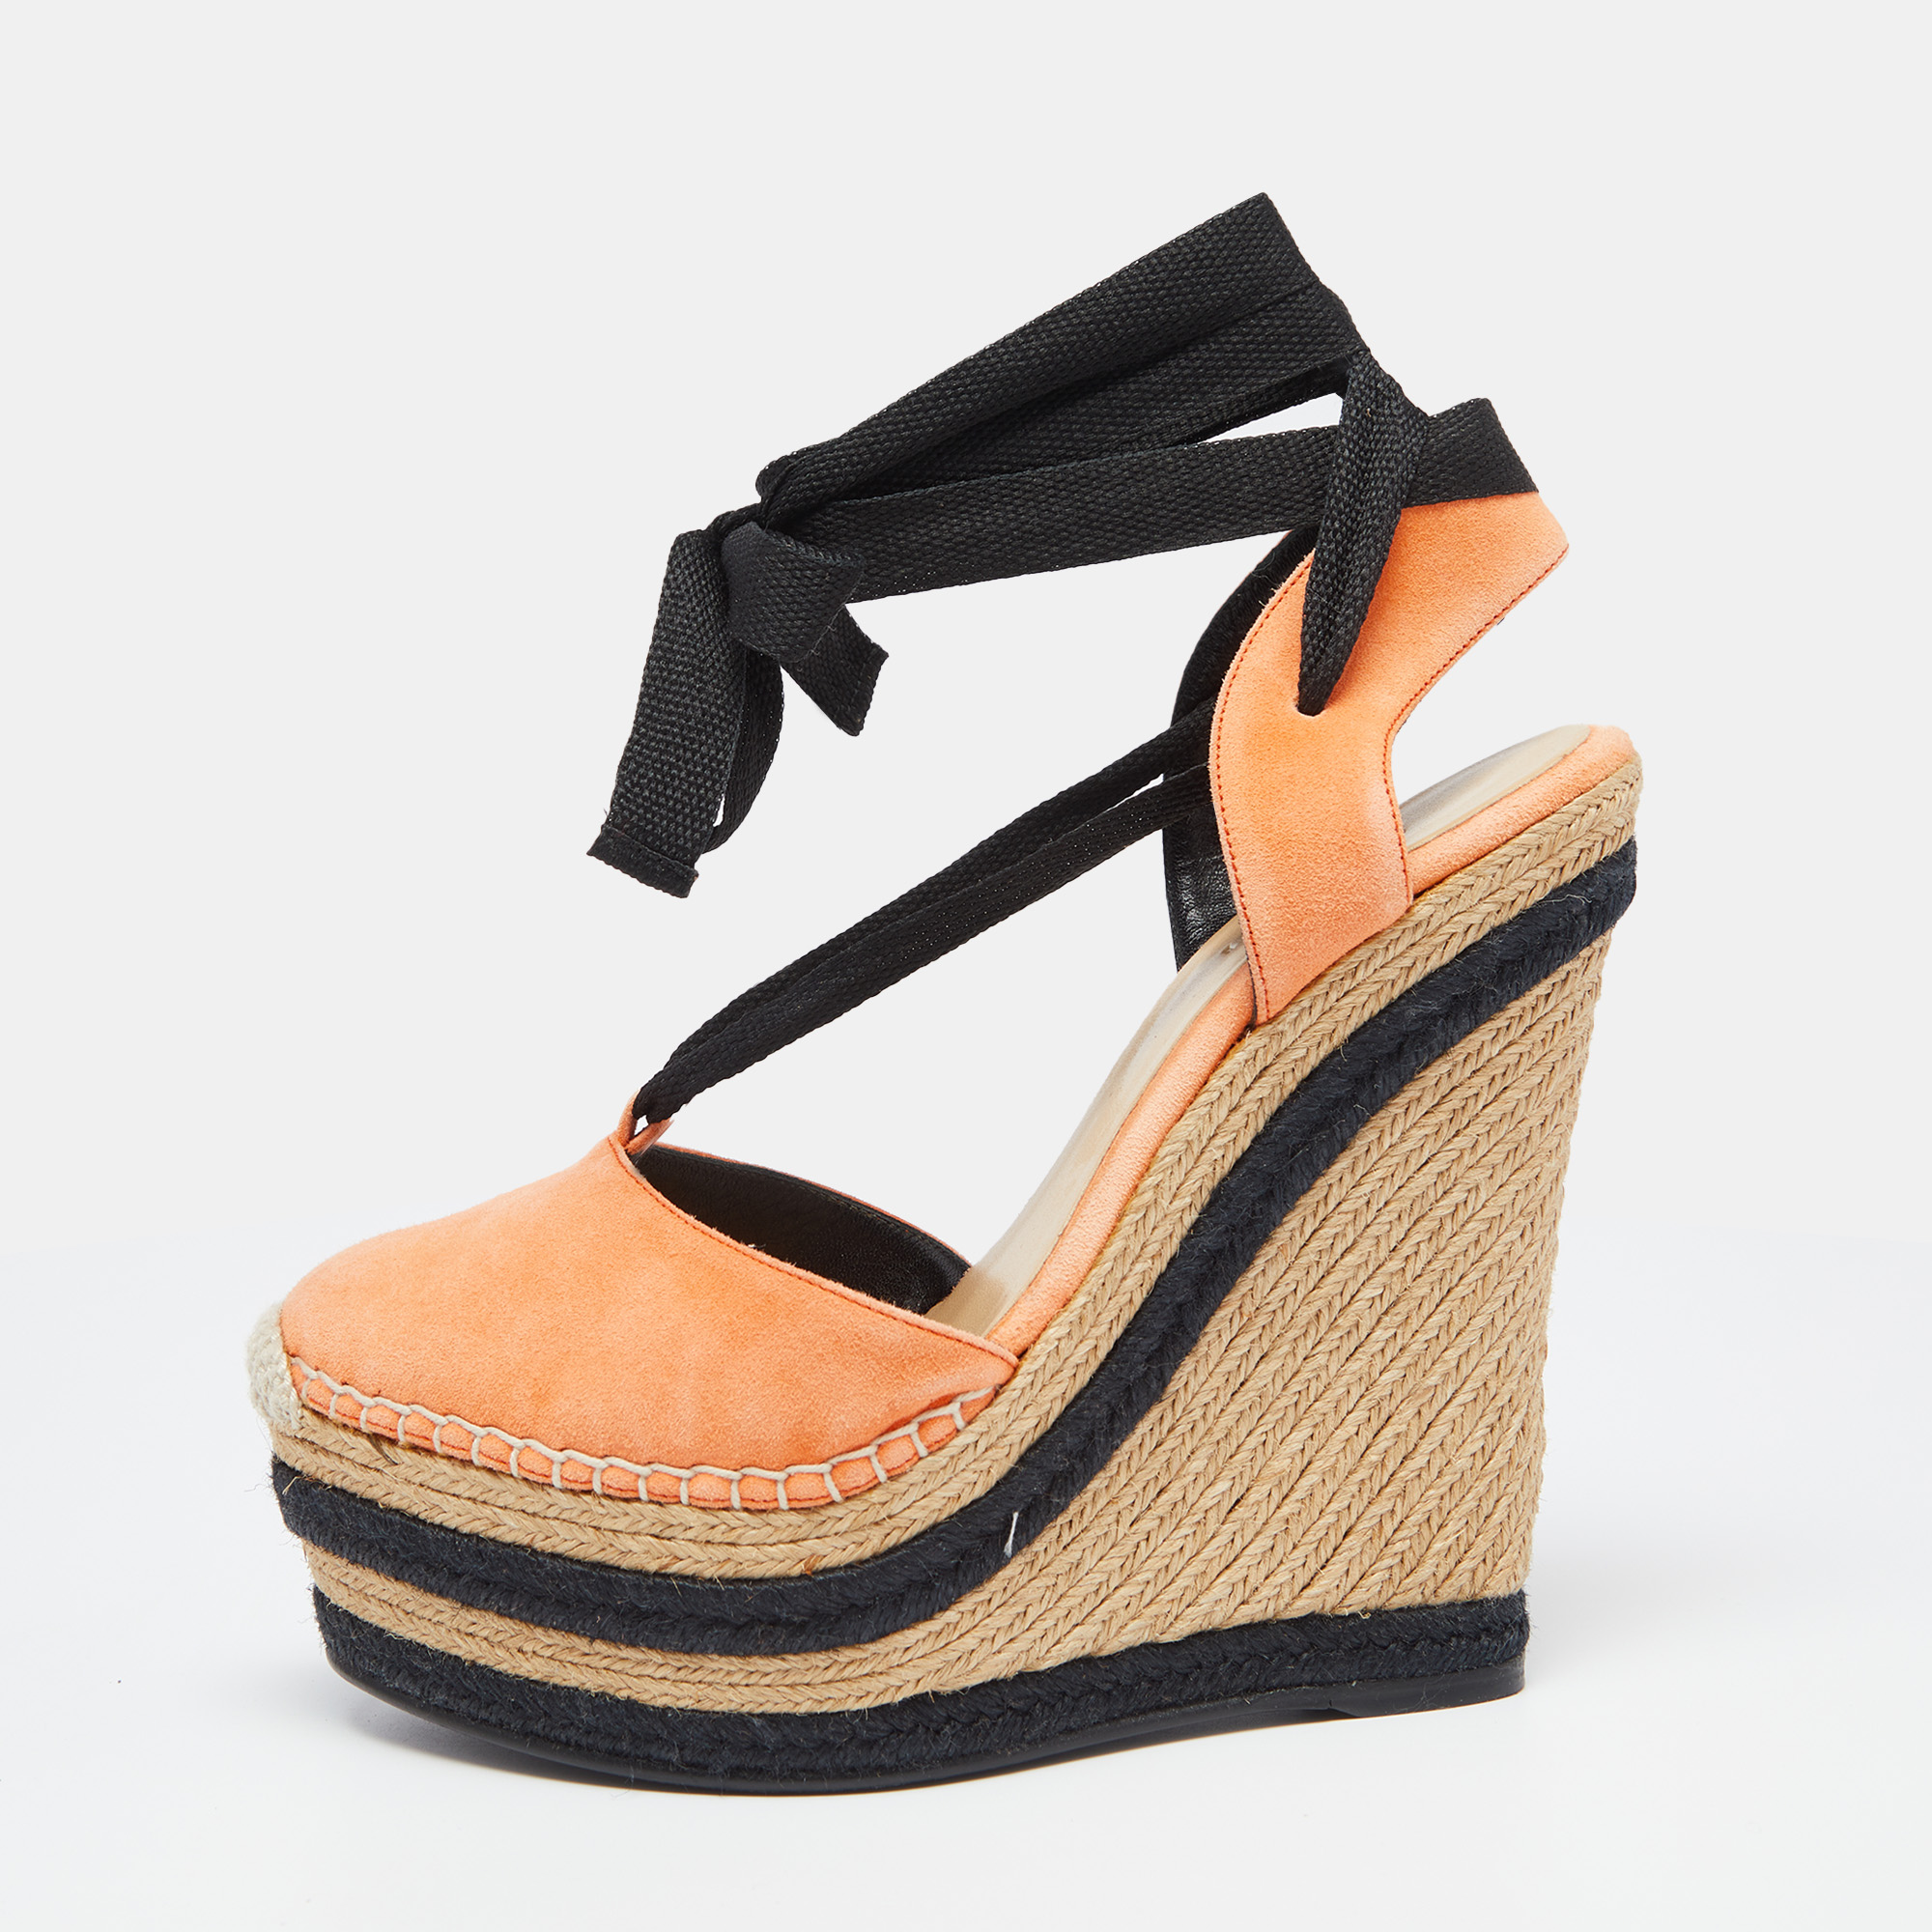 Gucci Orange/Black Suede Wedge Espadrille Sandals Size 36